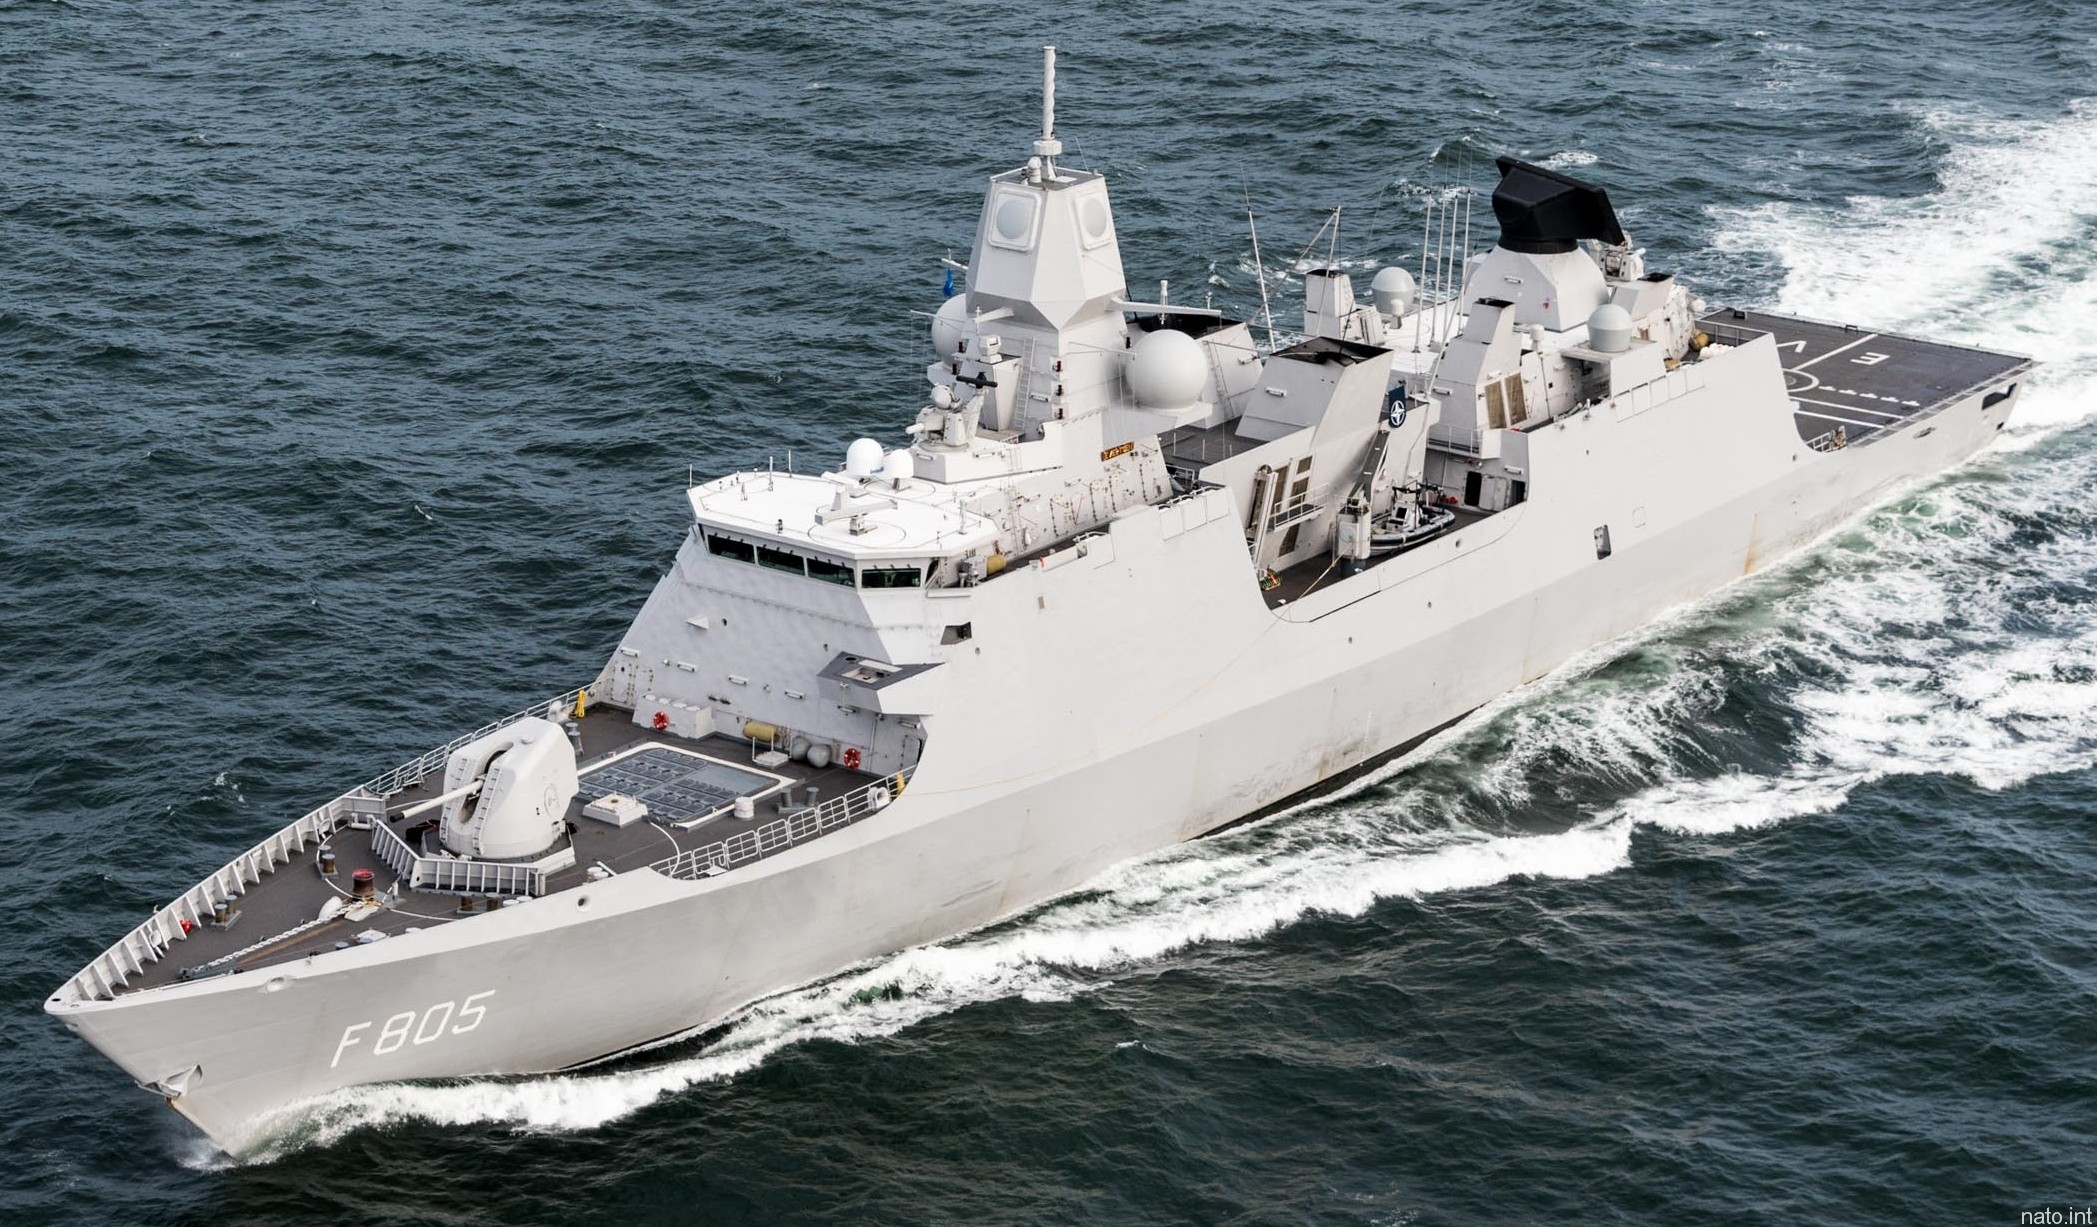 f-805 hnlms evertsen guided missile frigate ffg lcf royal netherlands navy 17 koninklijke marine